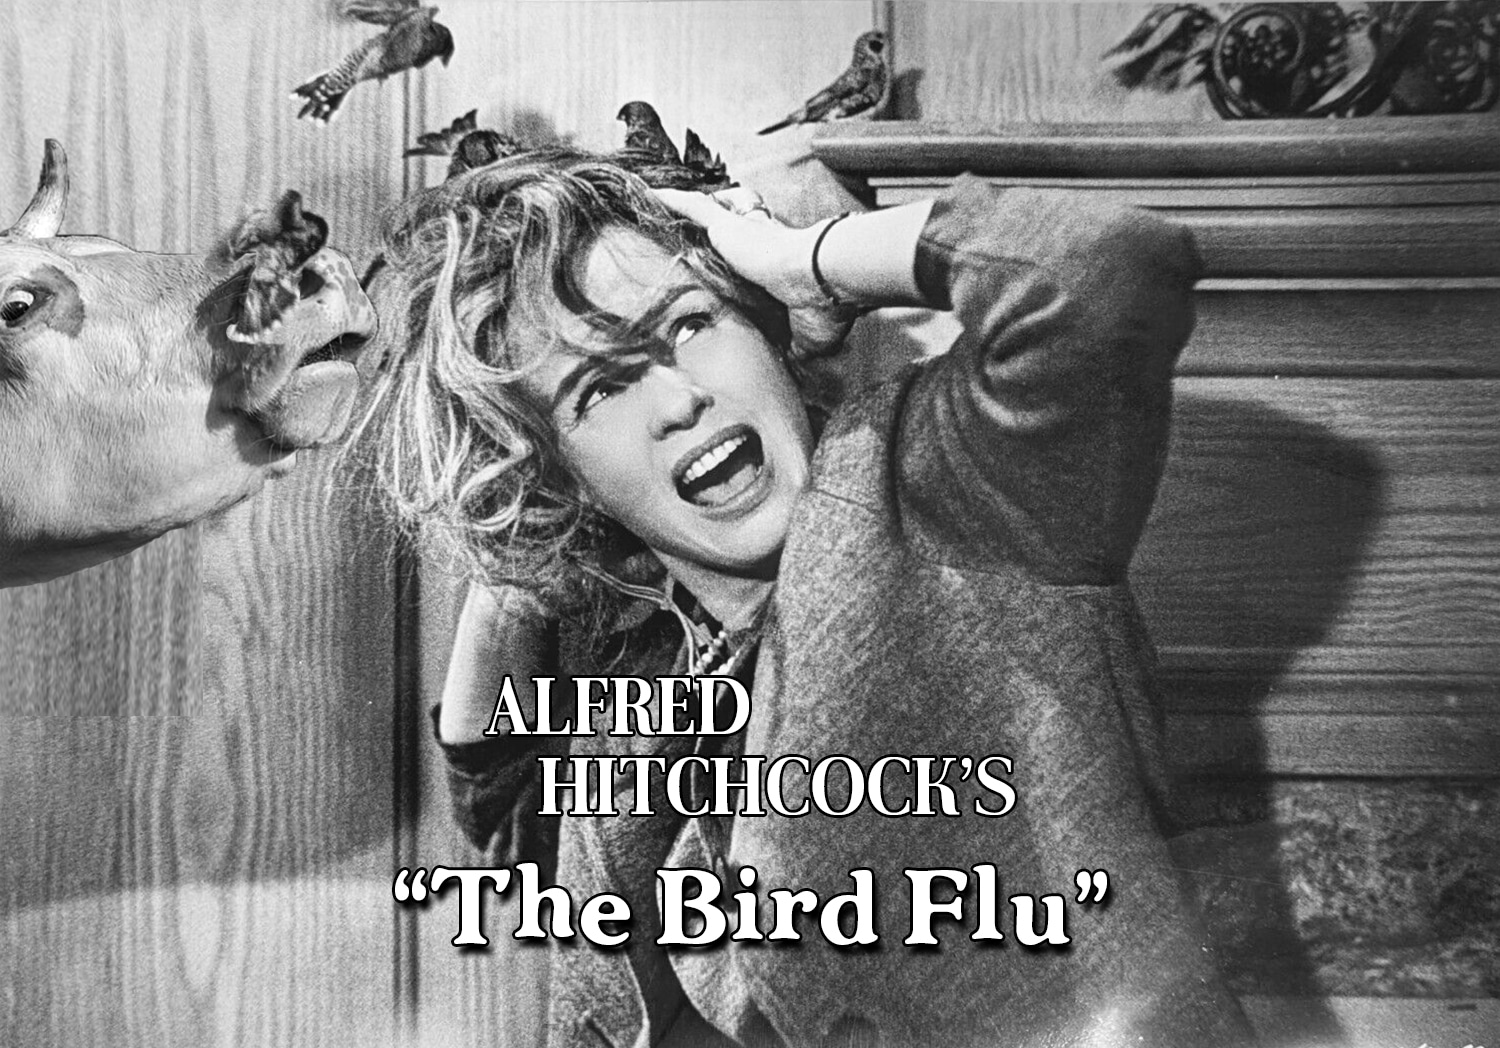 Bird Flu